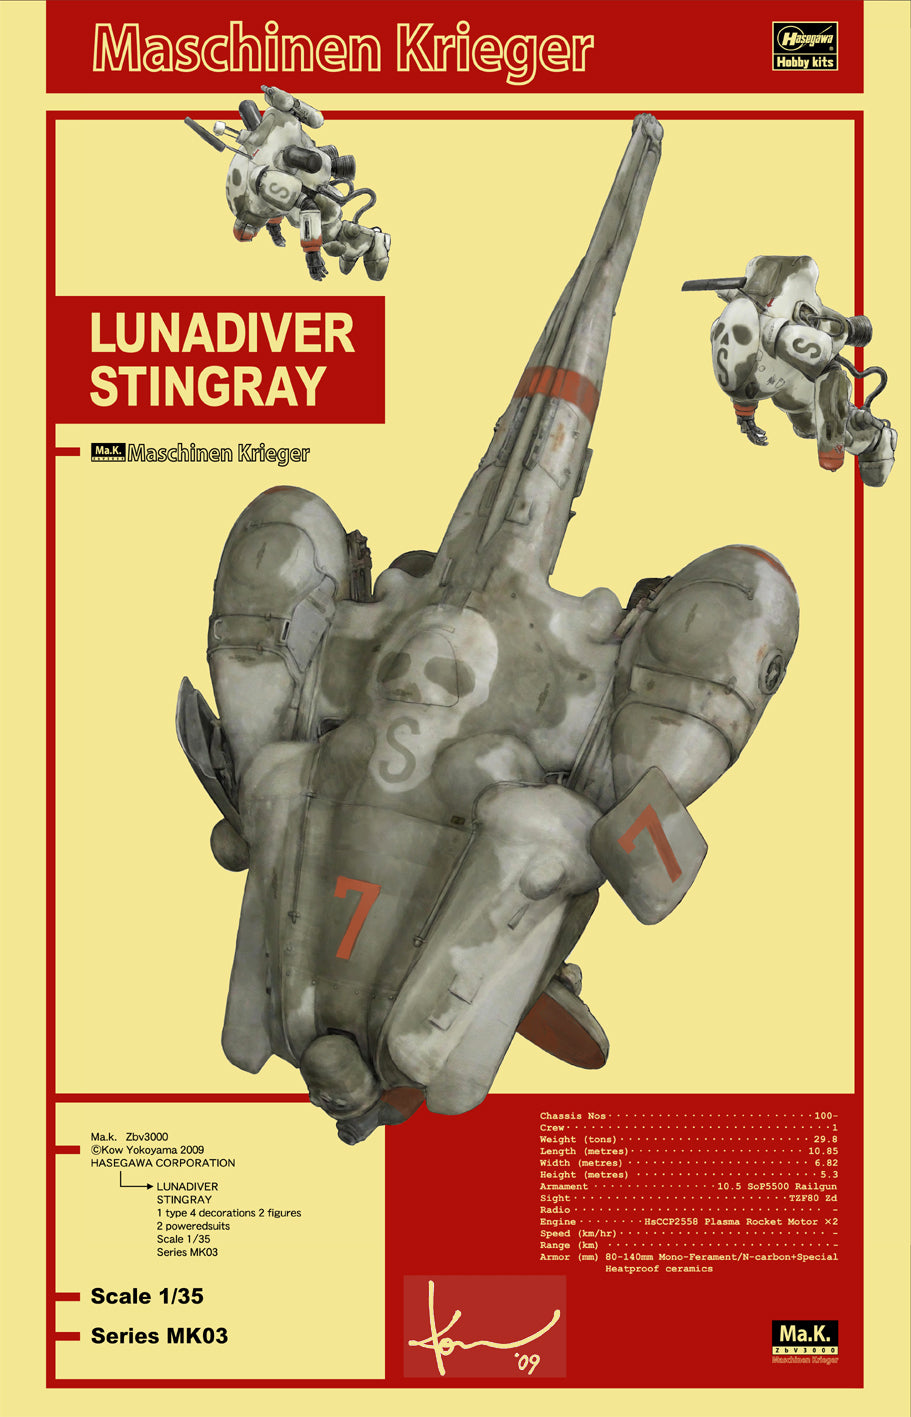 1/35 Maschinen Krieger Lunadiver Stingray - Hobby Sense